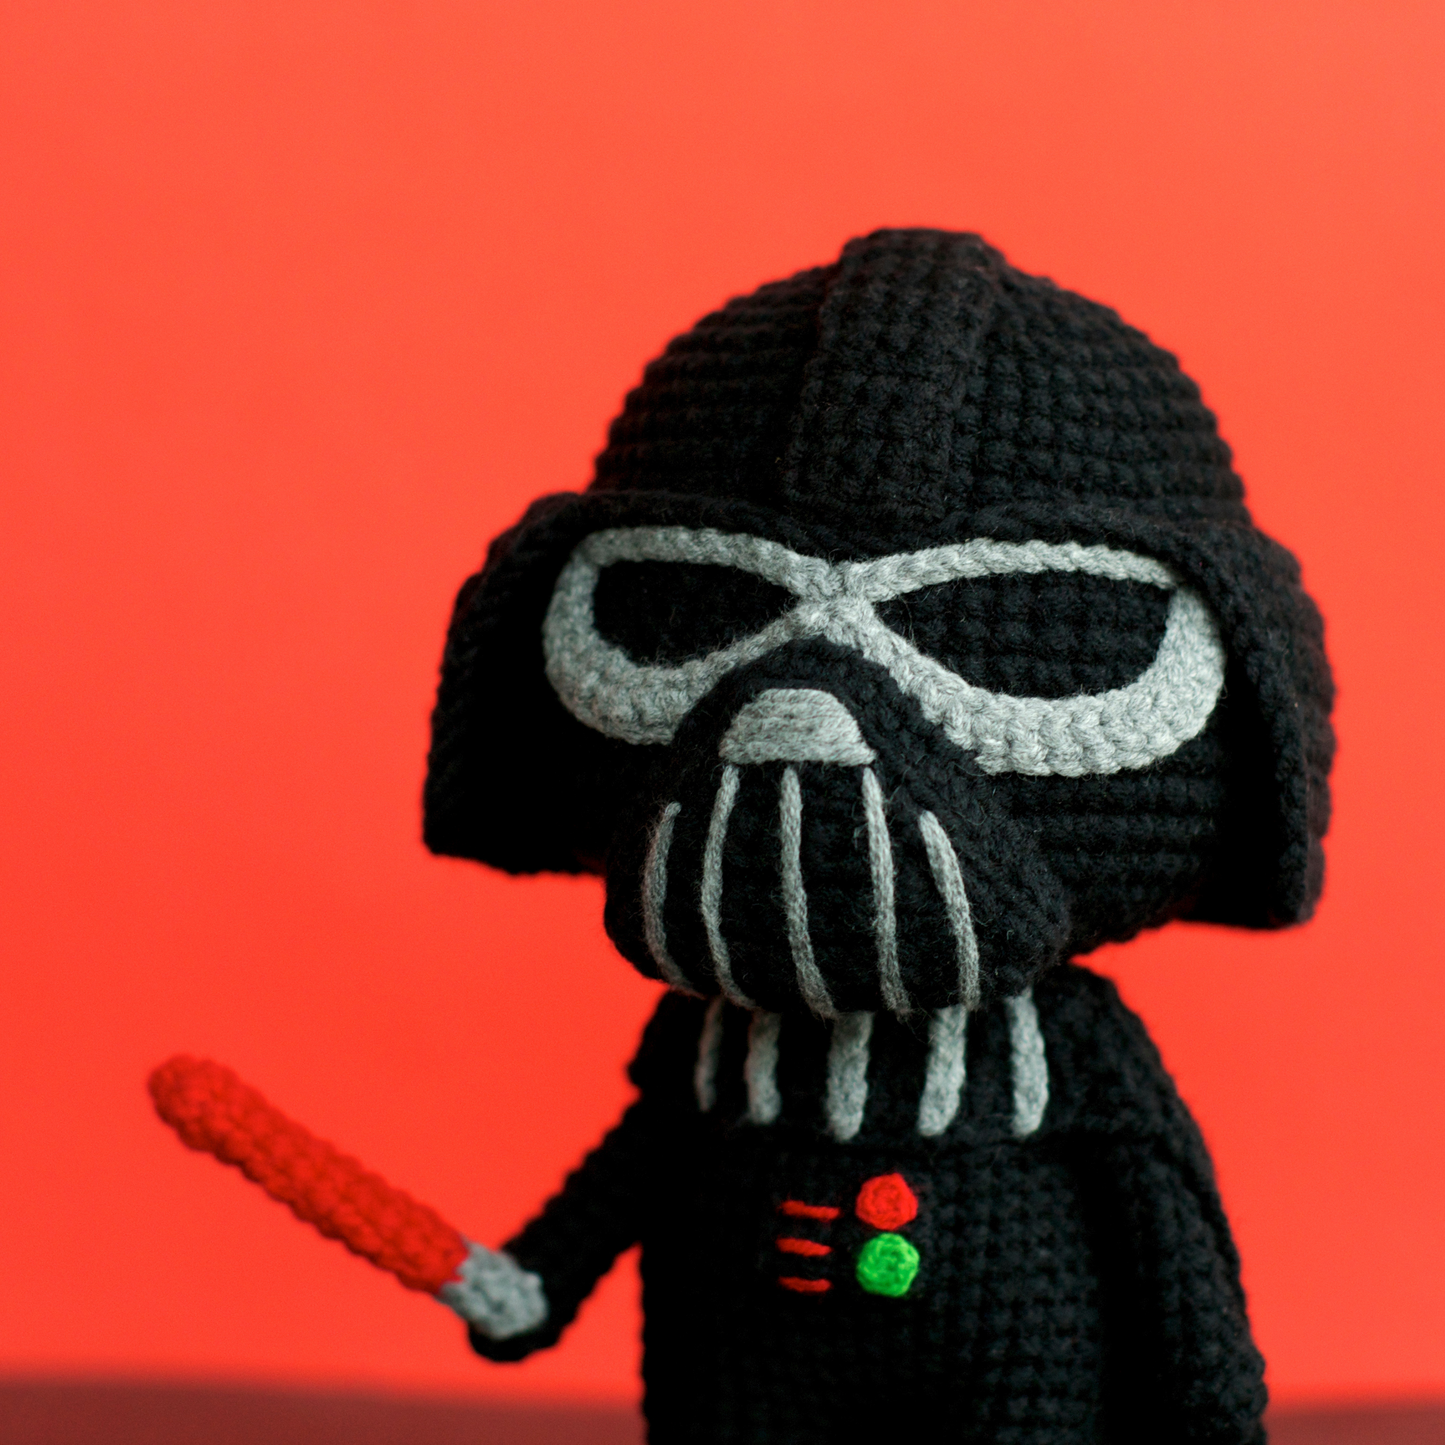 Chibi Darth Vader Crochet Pattern